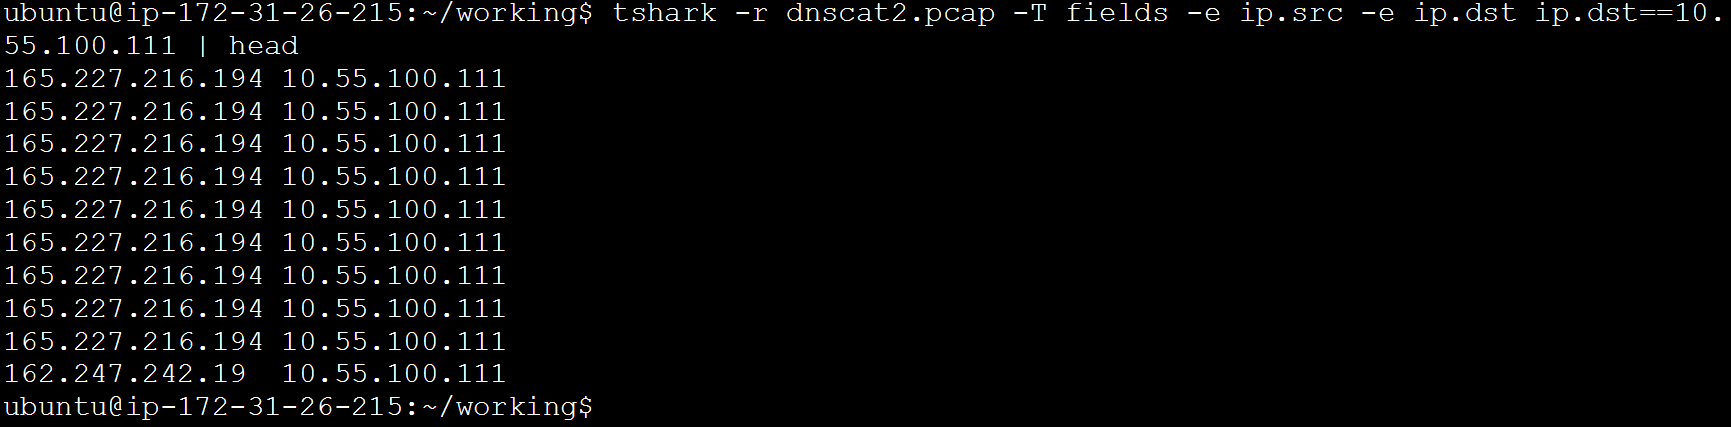 tshark linux